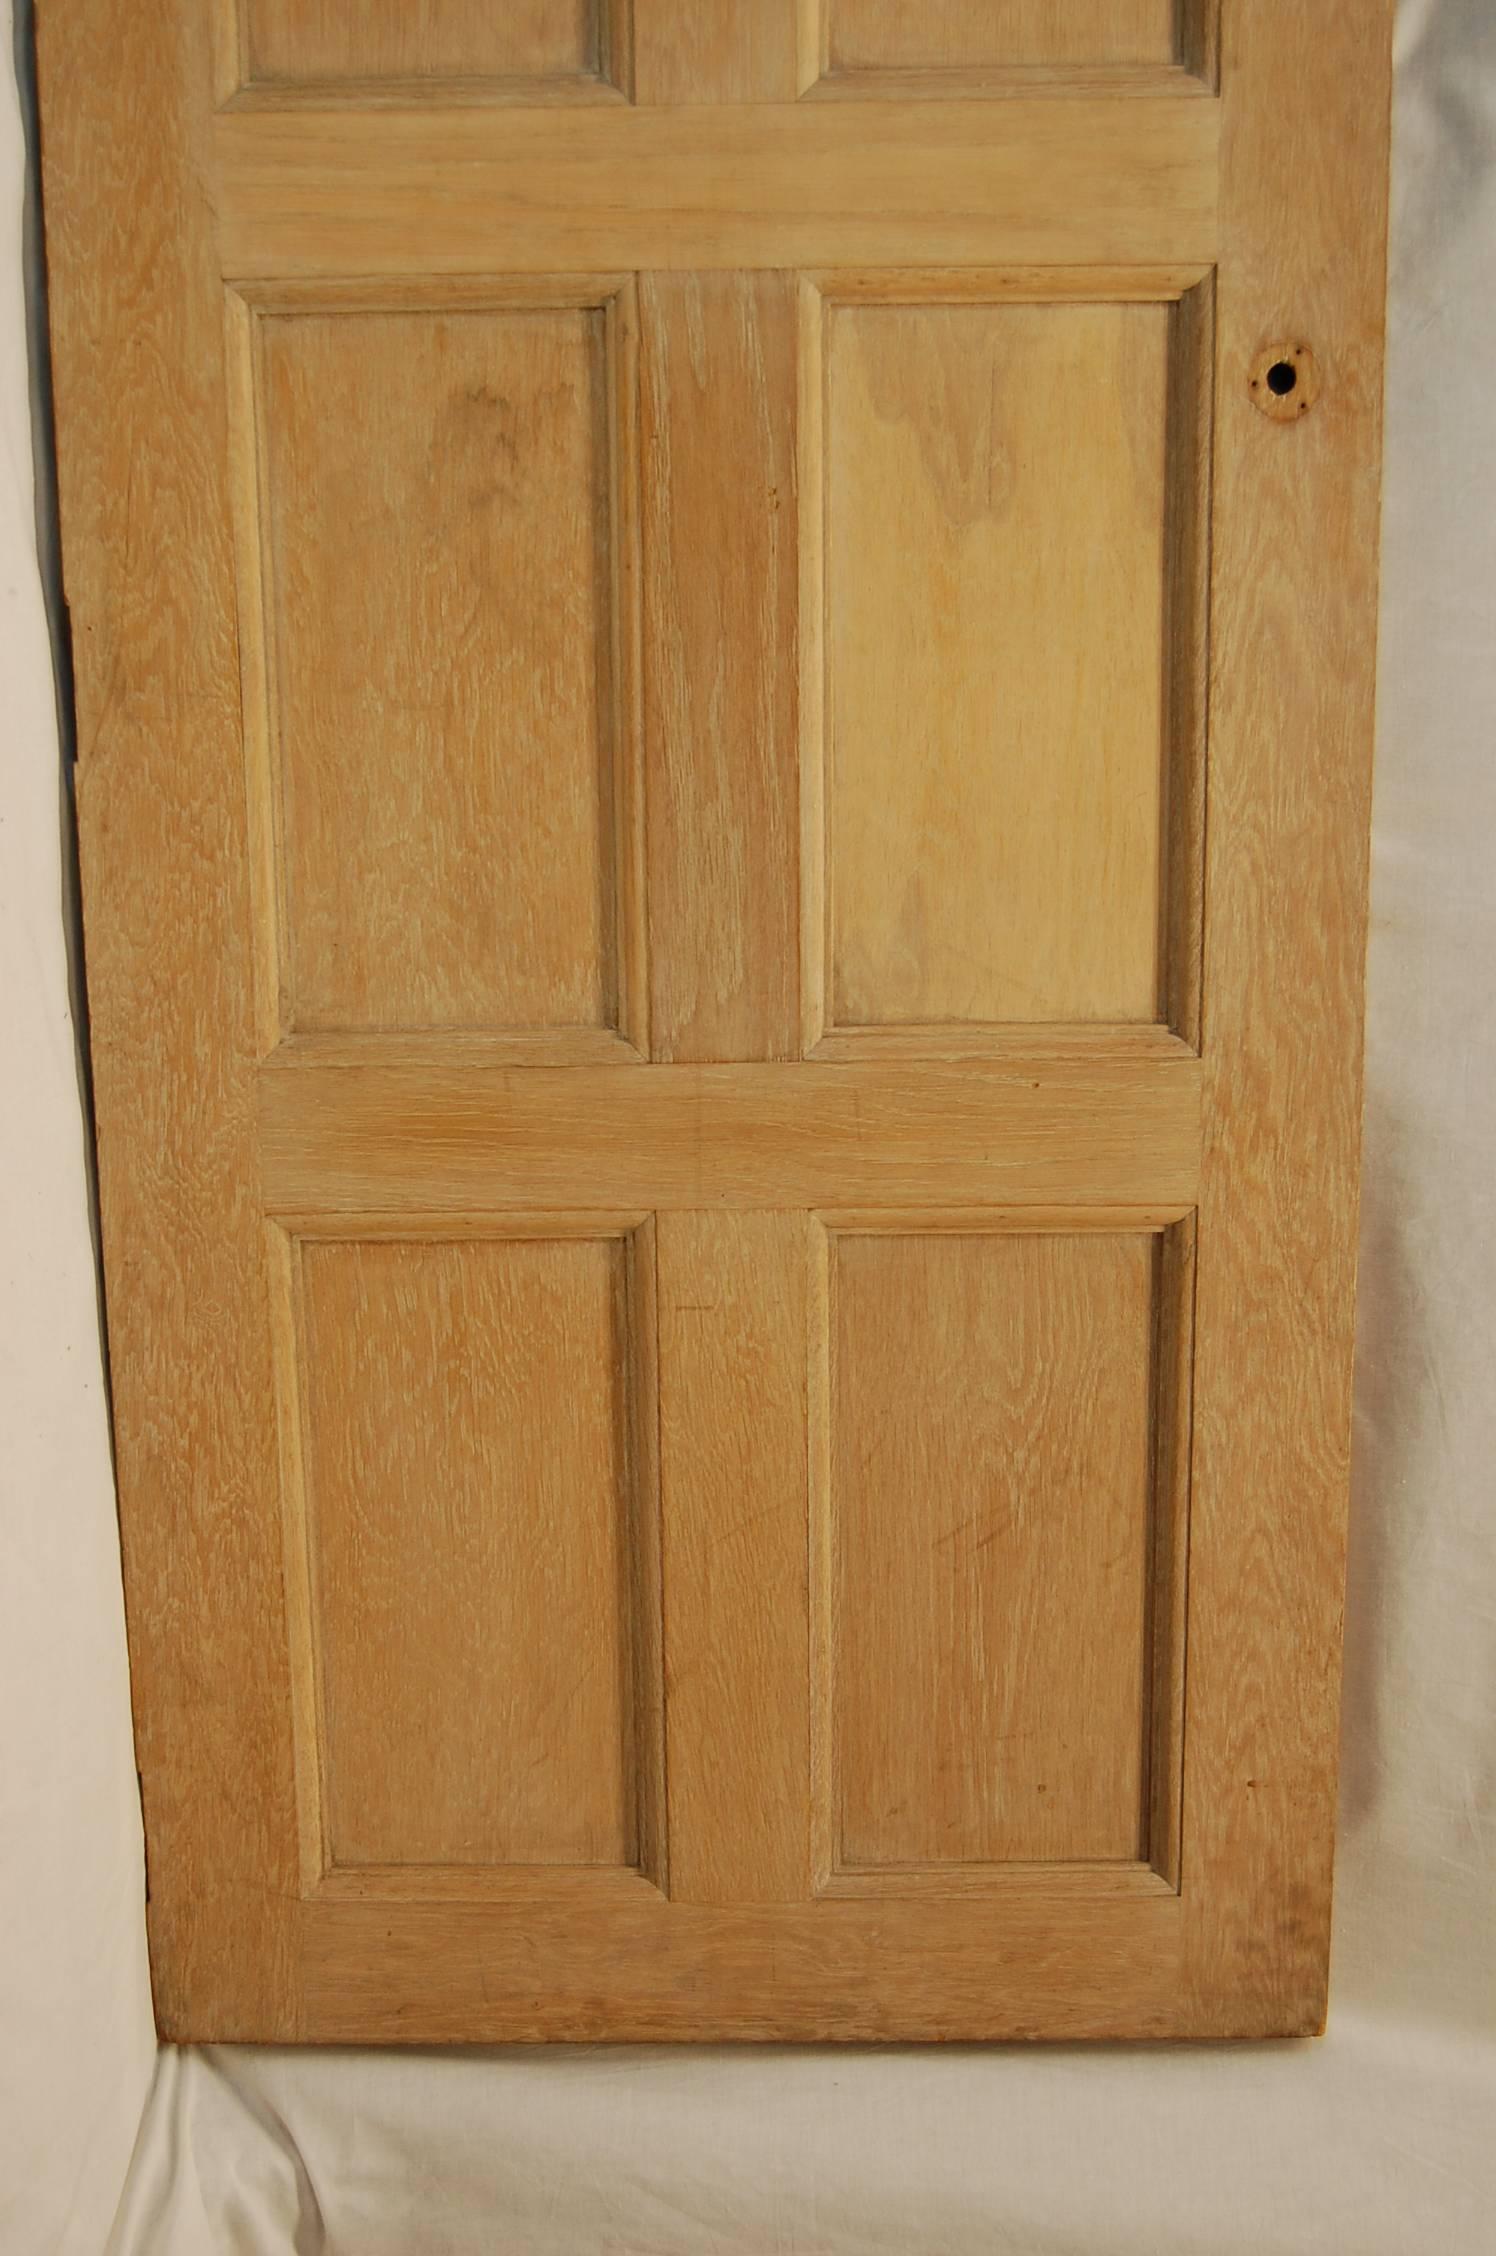 8 panel solid wood door